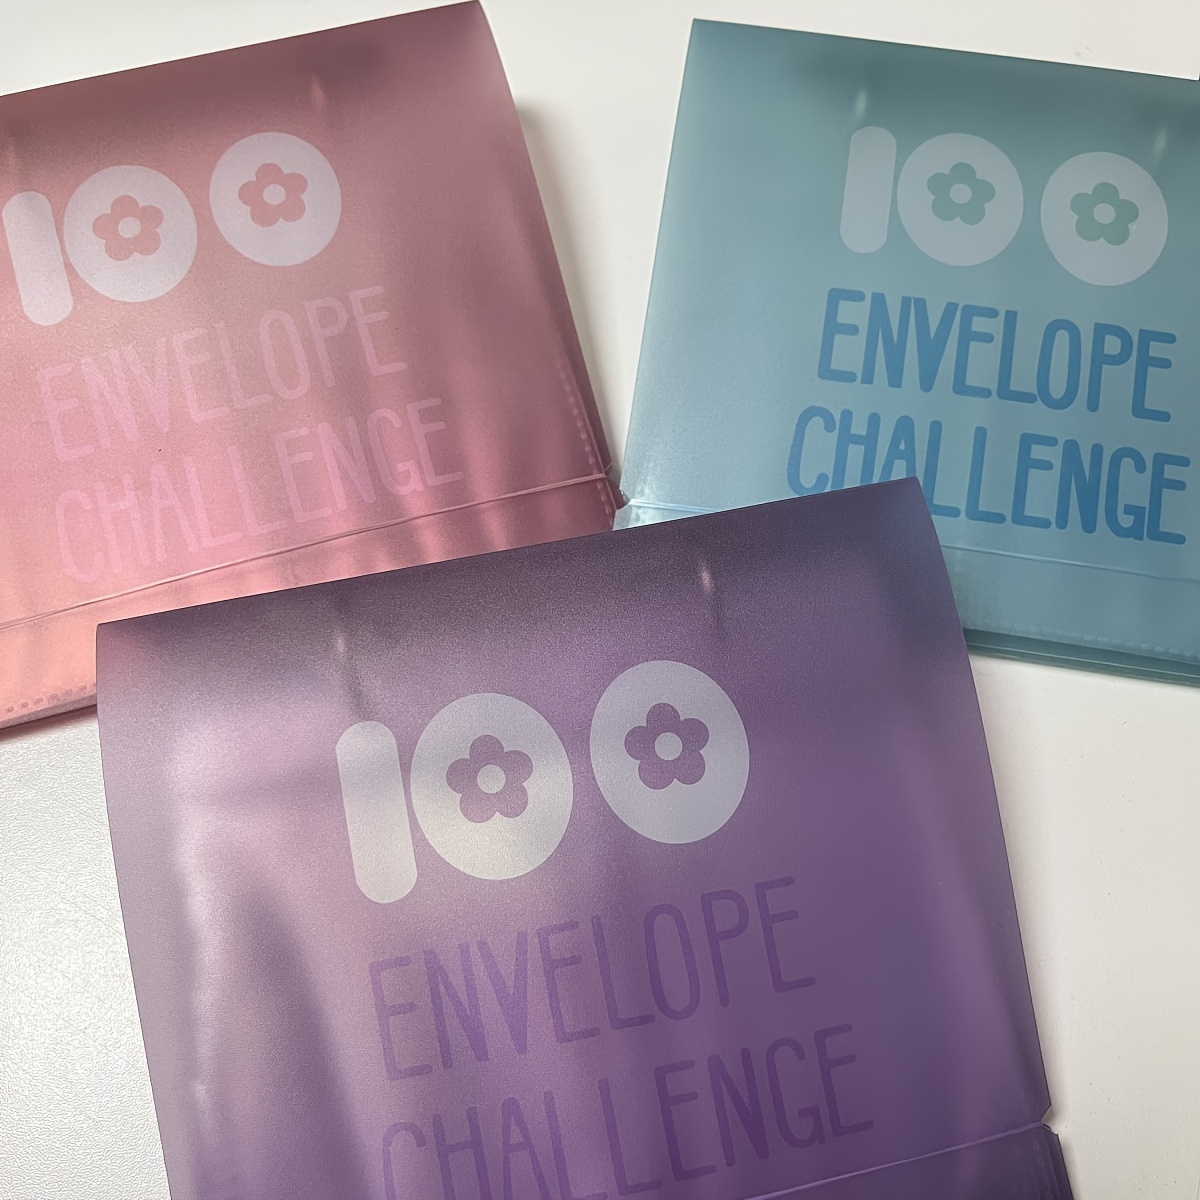 Classeur de défi de 100 enveloppes, moyen facile et amusant d